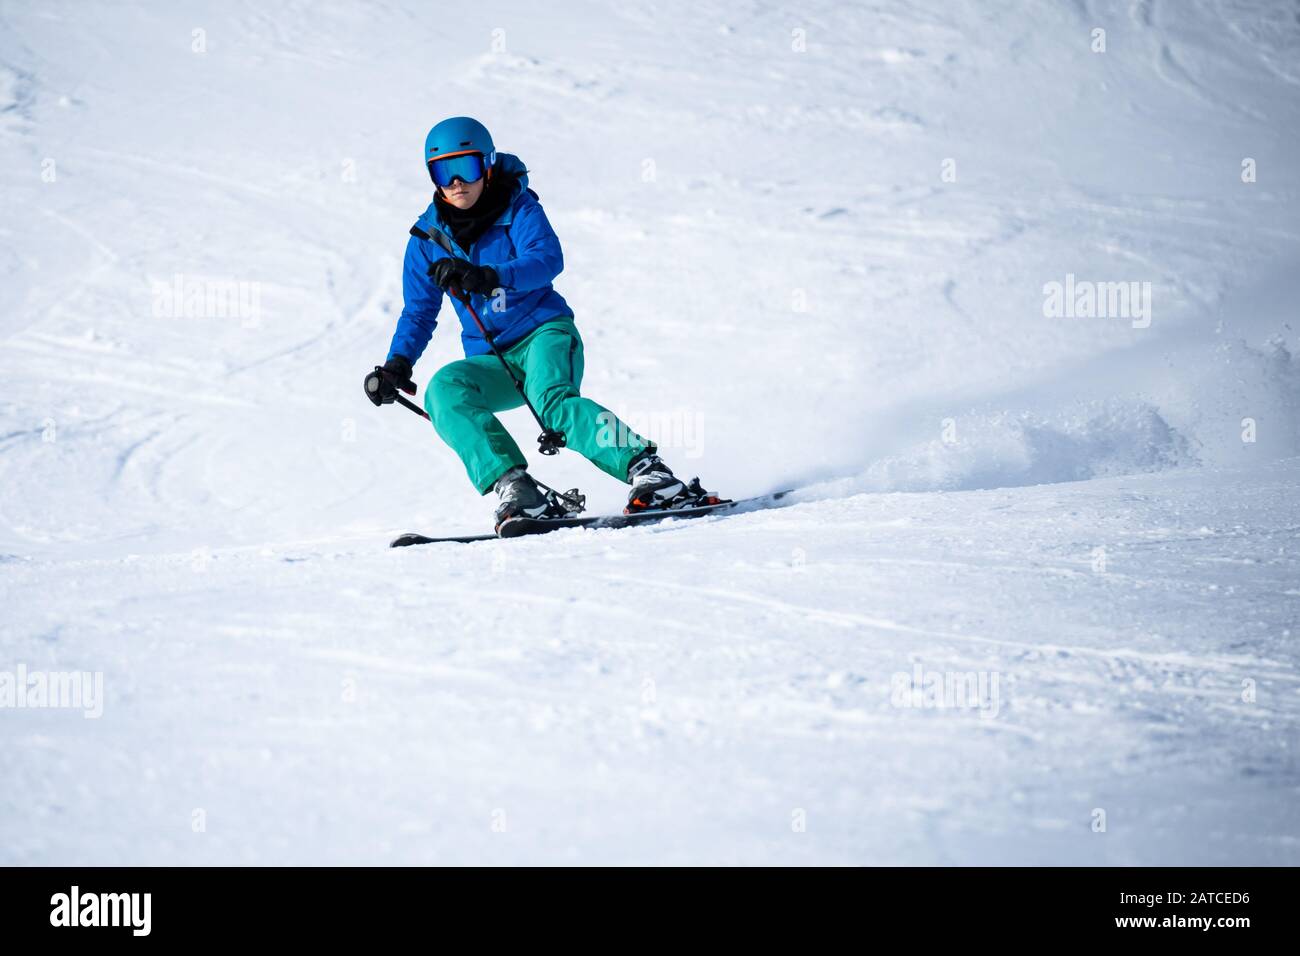 Woman skiing, Zauchensee ski resort, Salzburg, Austria Stock Photo